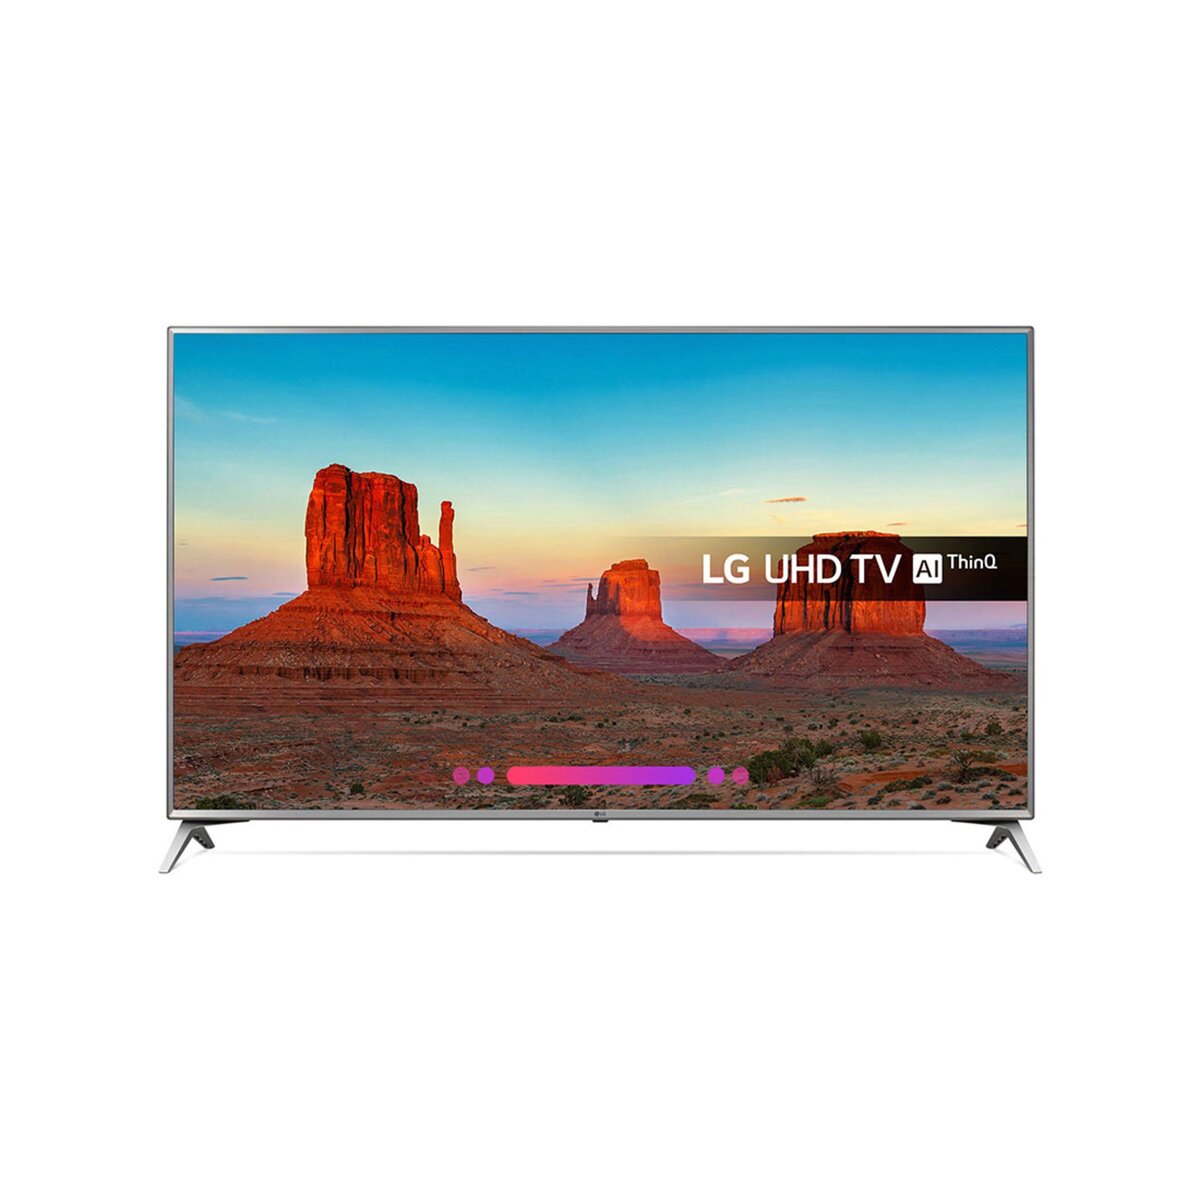 LG 70UK6500 TV LED 4K UHD 177 cm HDR Smart TV Silver